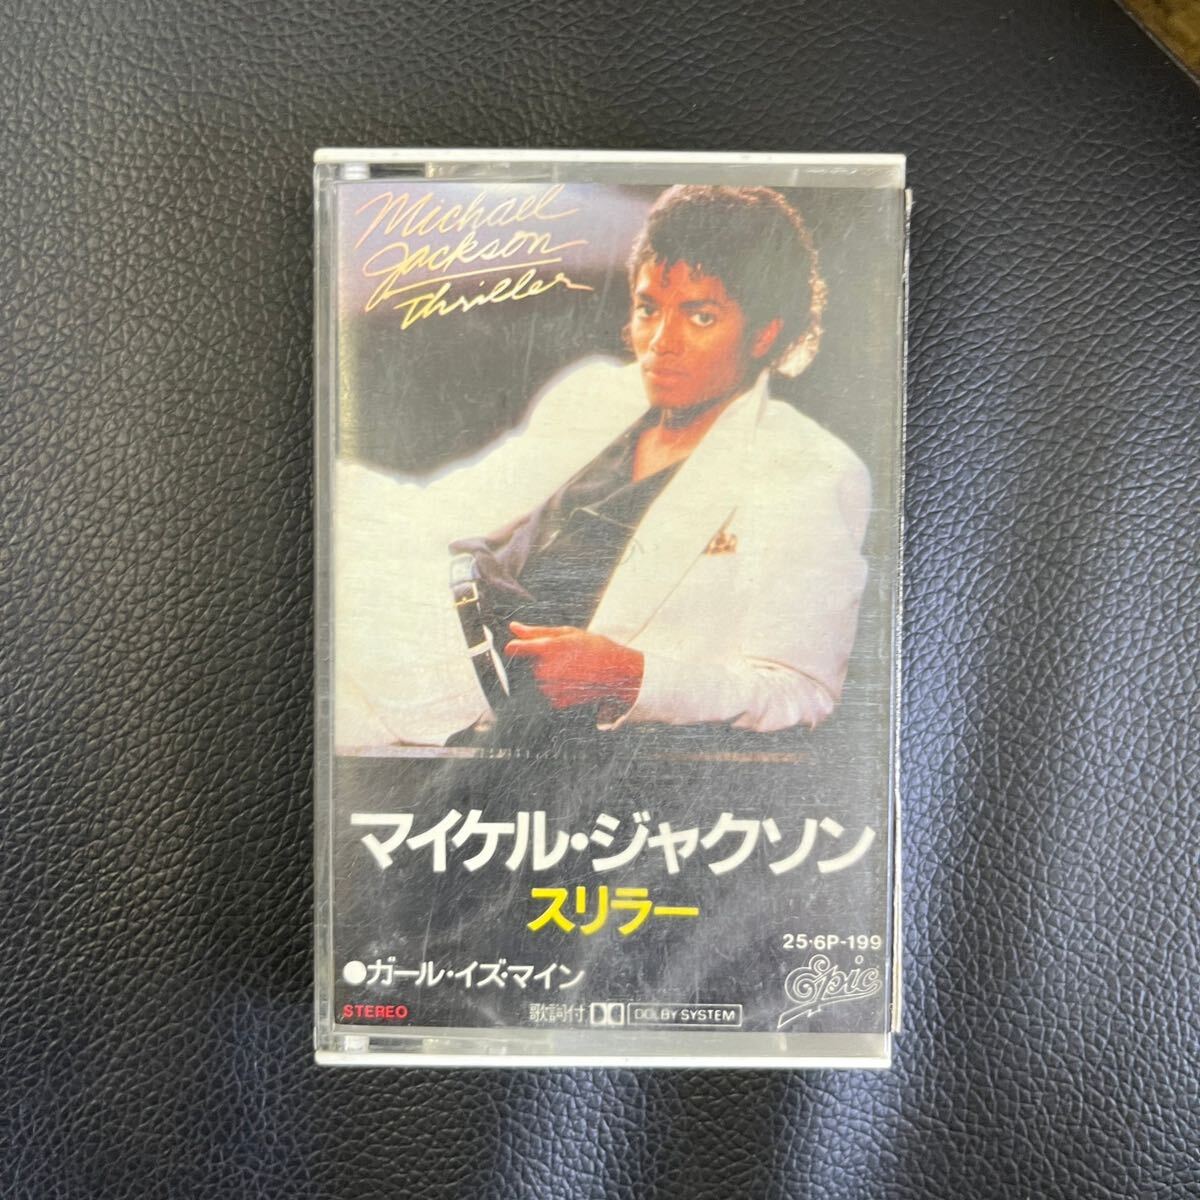 日本最級 マイケルジャクソン CDセット 洋楽 - toquecommeunchef.fr